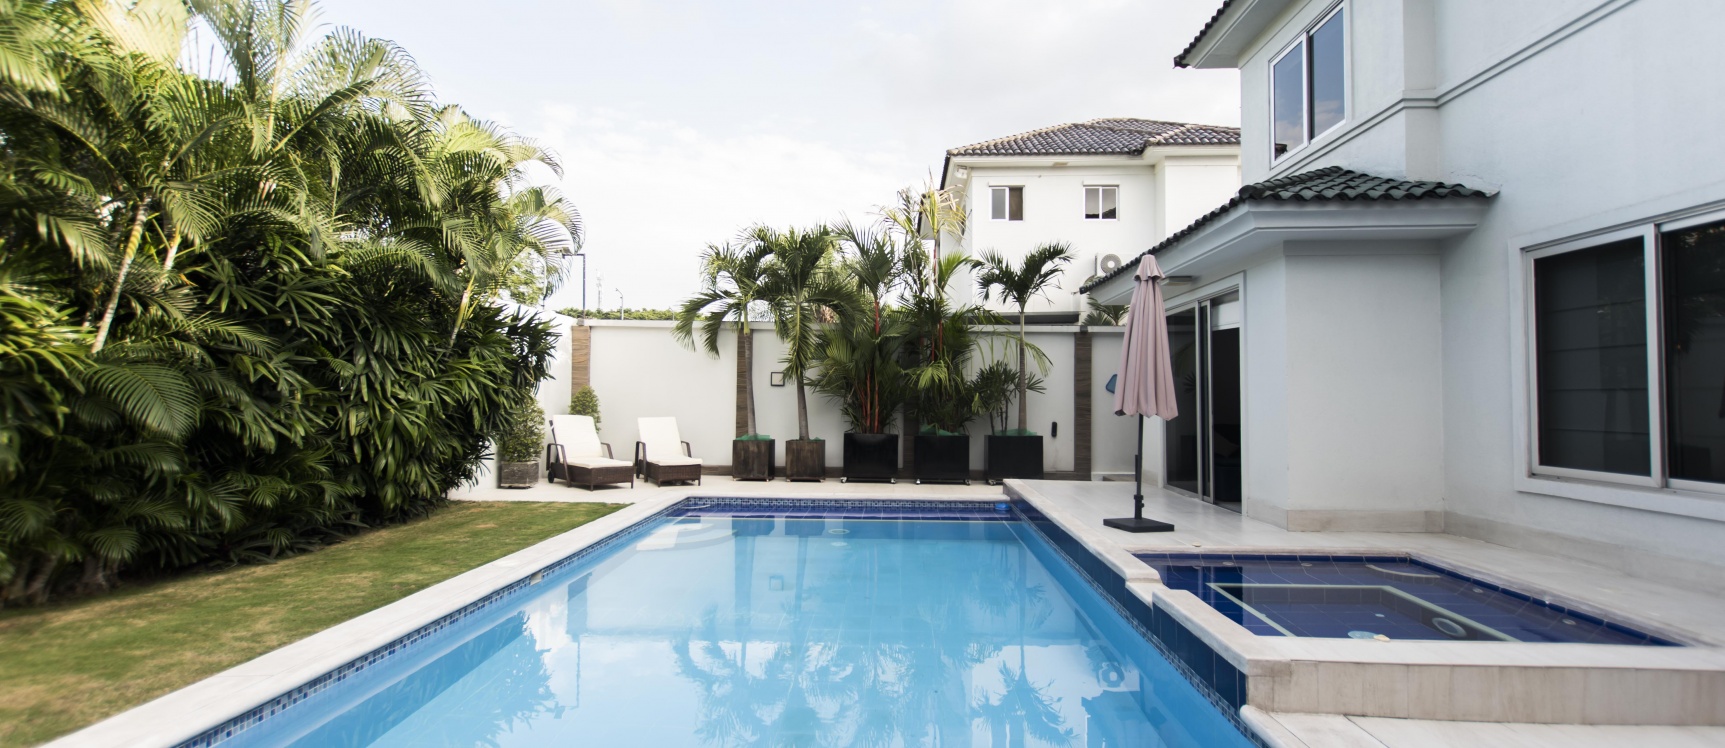 GeoBienes - Casa en venta ubicado en Urbanización Laguna del Sol, Samborondón - Plusvalia Guayaquil Casas de venta y alquiler Inmobiliaria Ecuador